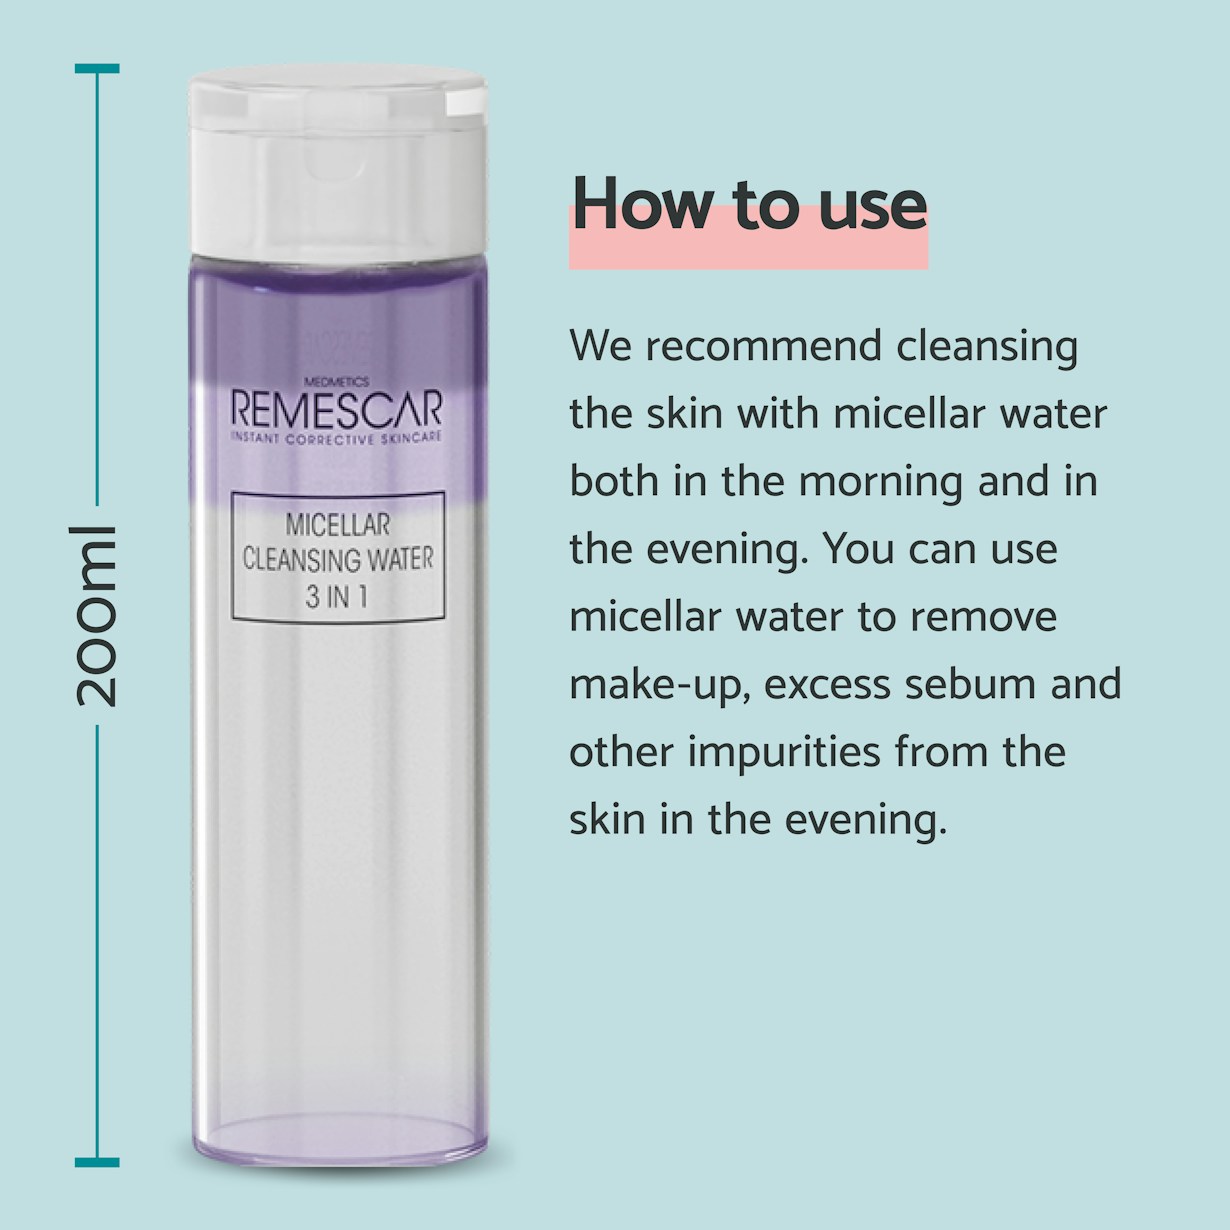 Miscellar water EN3